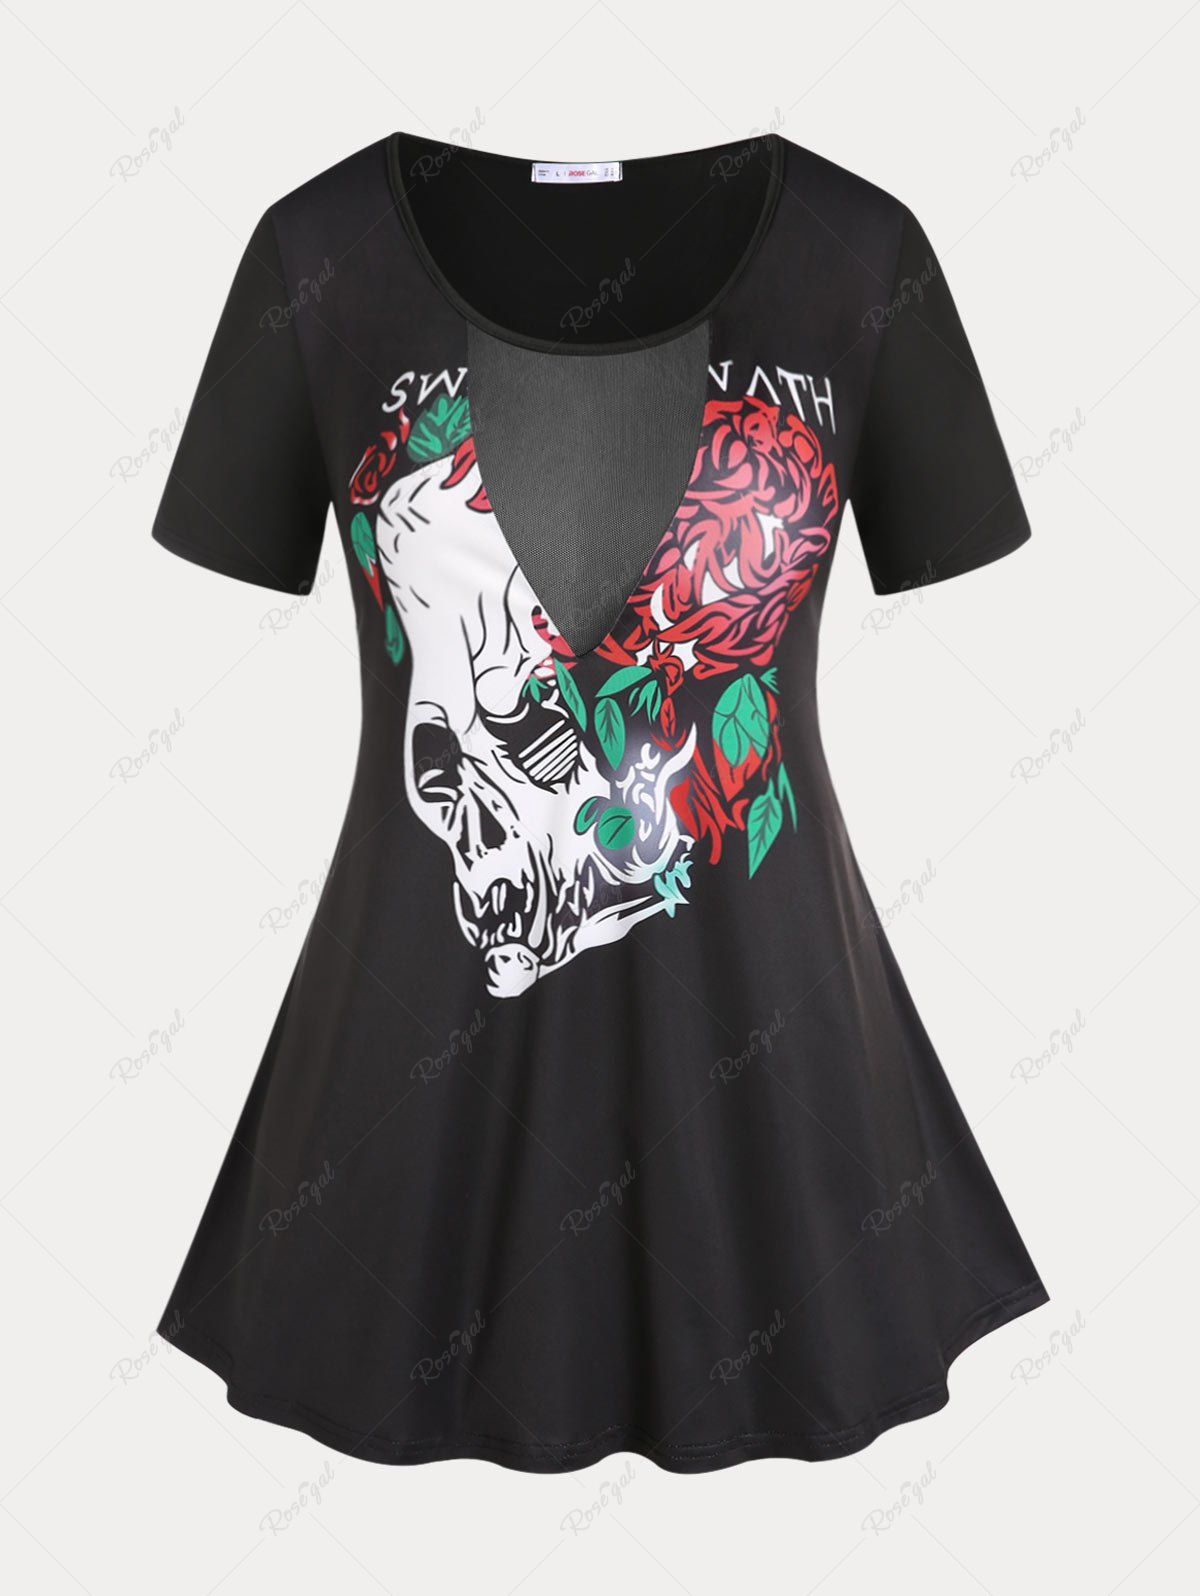 Shop Plus Size & Curve Mesh Panel Gothic Skulls Rose Graphic T Shirt  